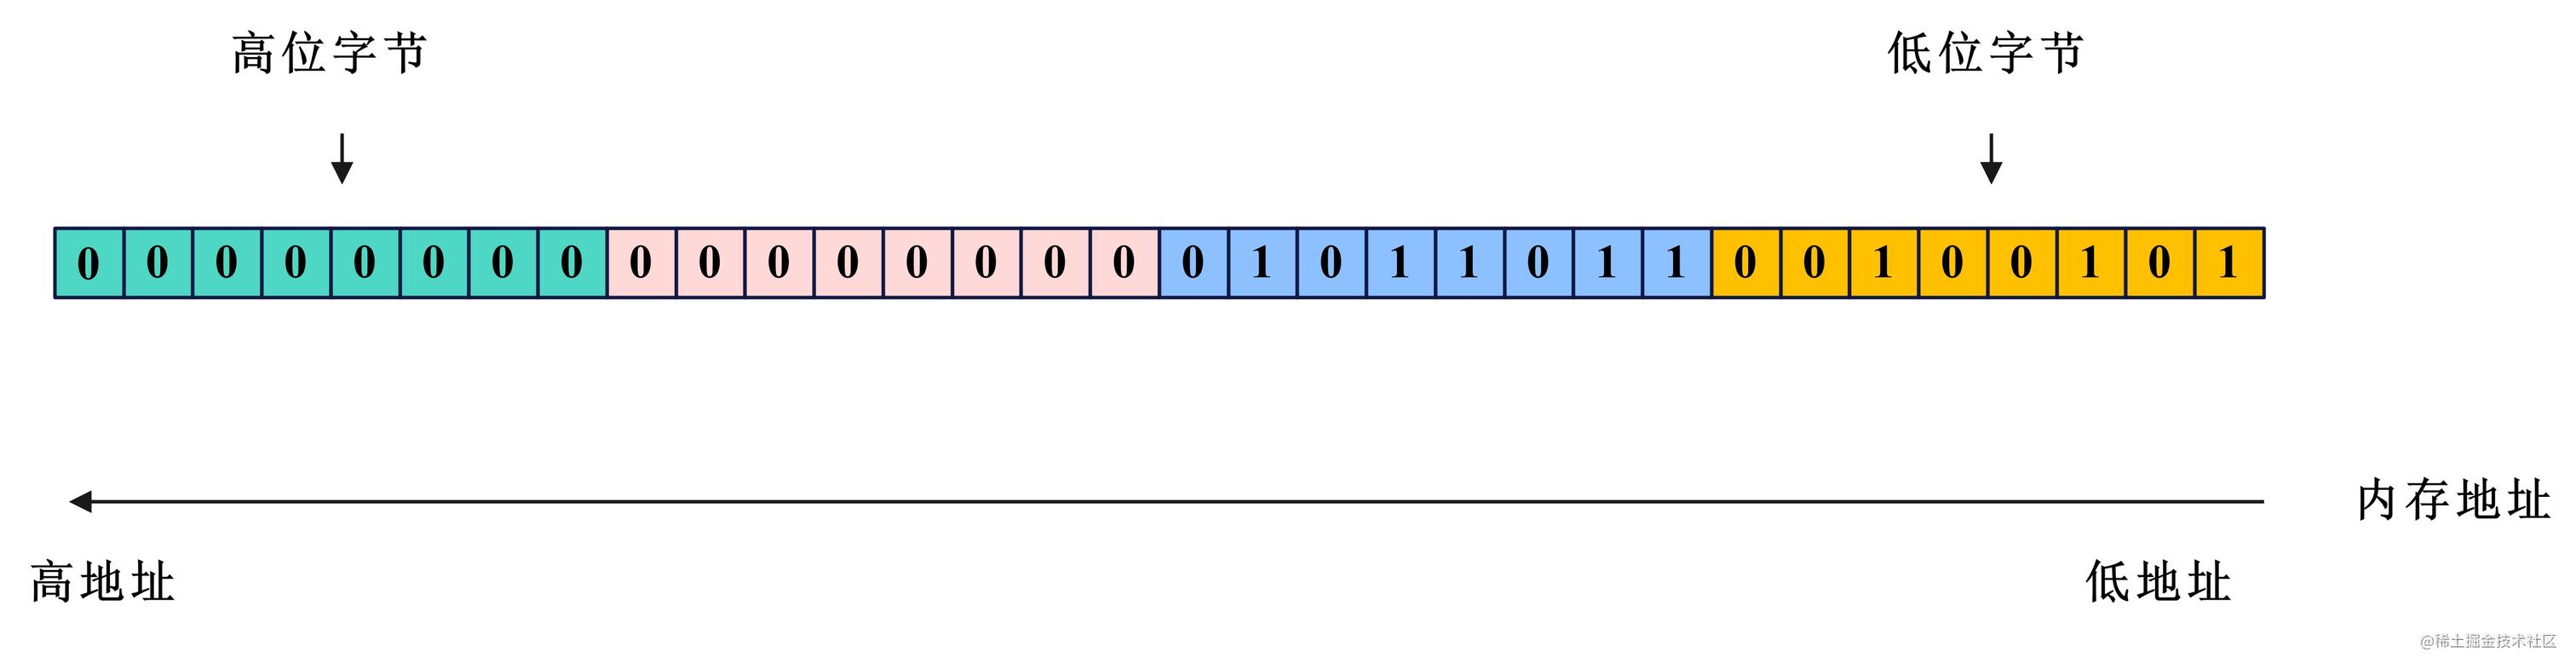 网络编程-小端字节序示意图